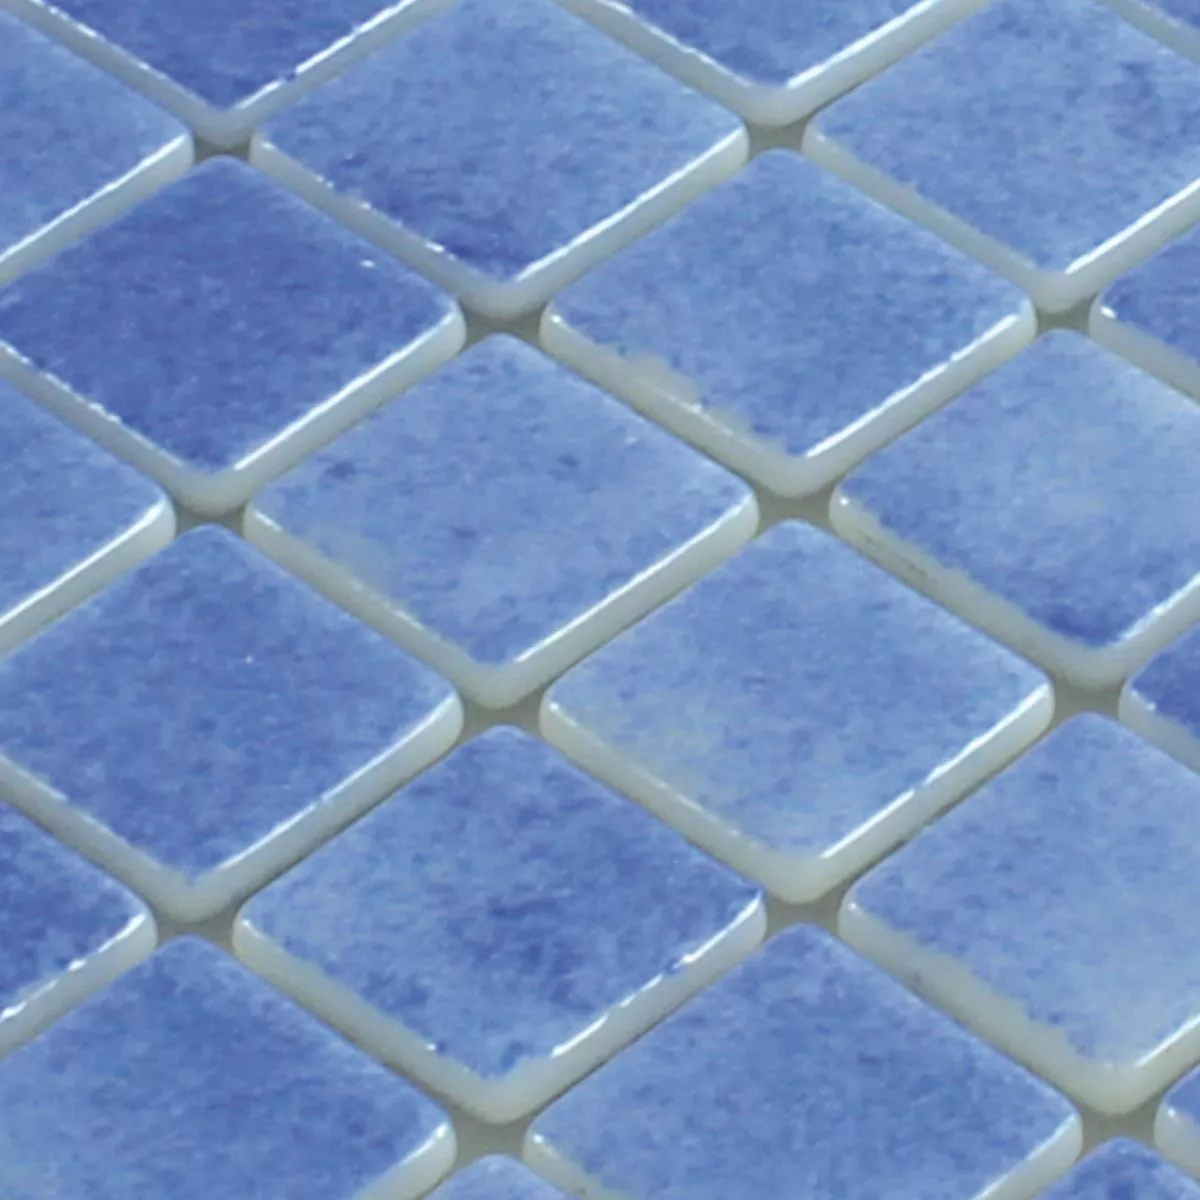 Muster von Glas Schwimmbad Pool Mosaik Lagune R11C Himmelblau